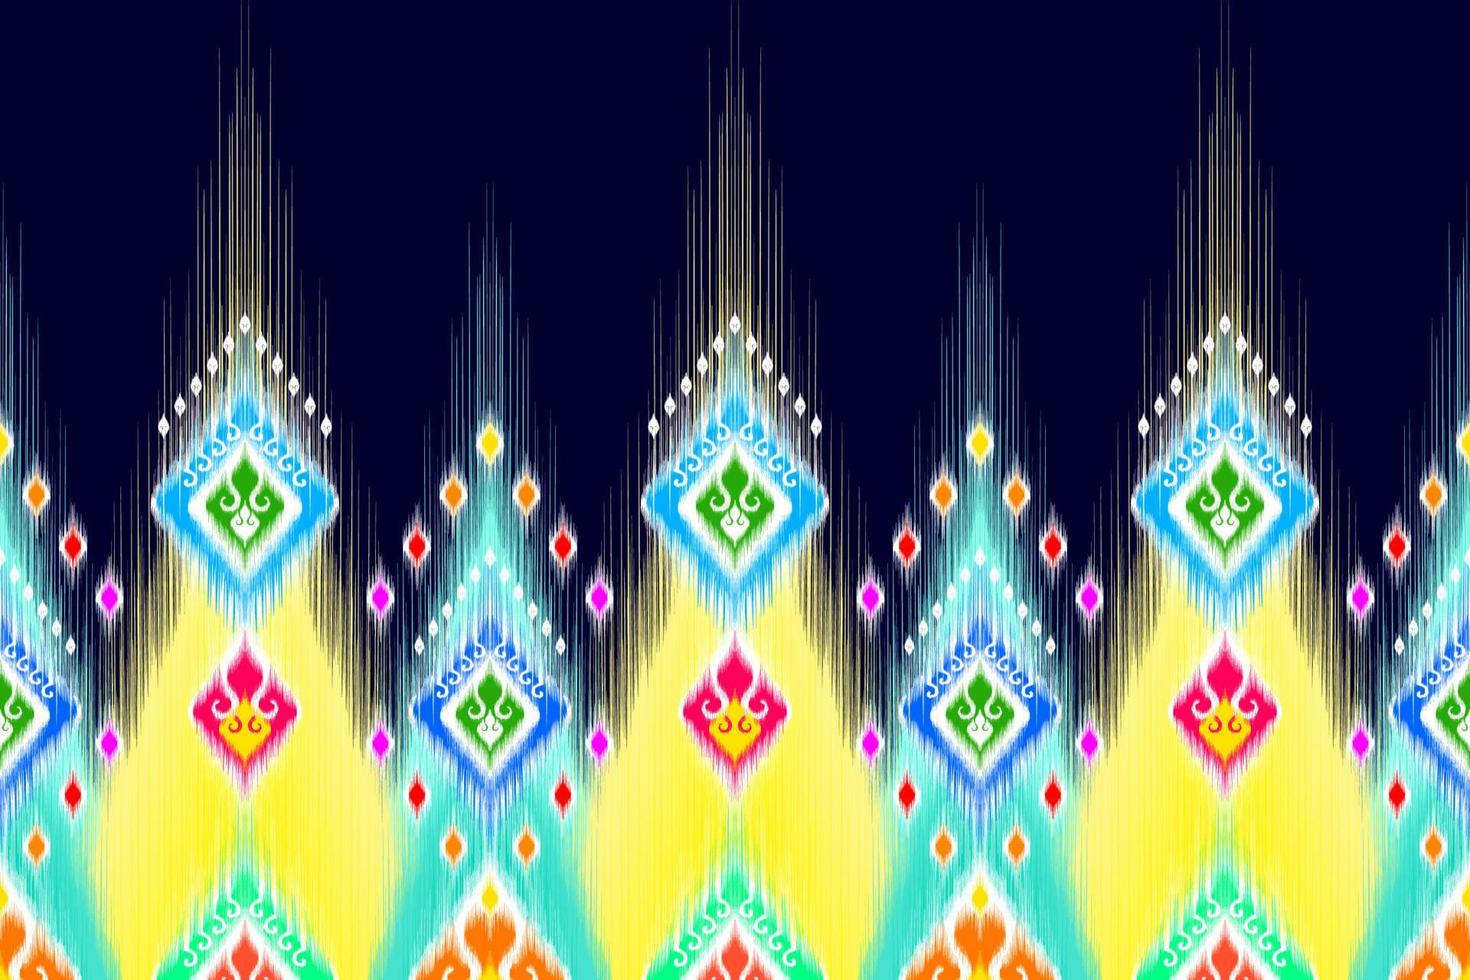 ikat abstract geometrisch etnisch patroonontwerp. Azteekse stof tapijt mandala ornament etnische chevron textiel decoratie behang. tribal boho inheemse etnische turkije traditionele borduurvector vector